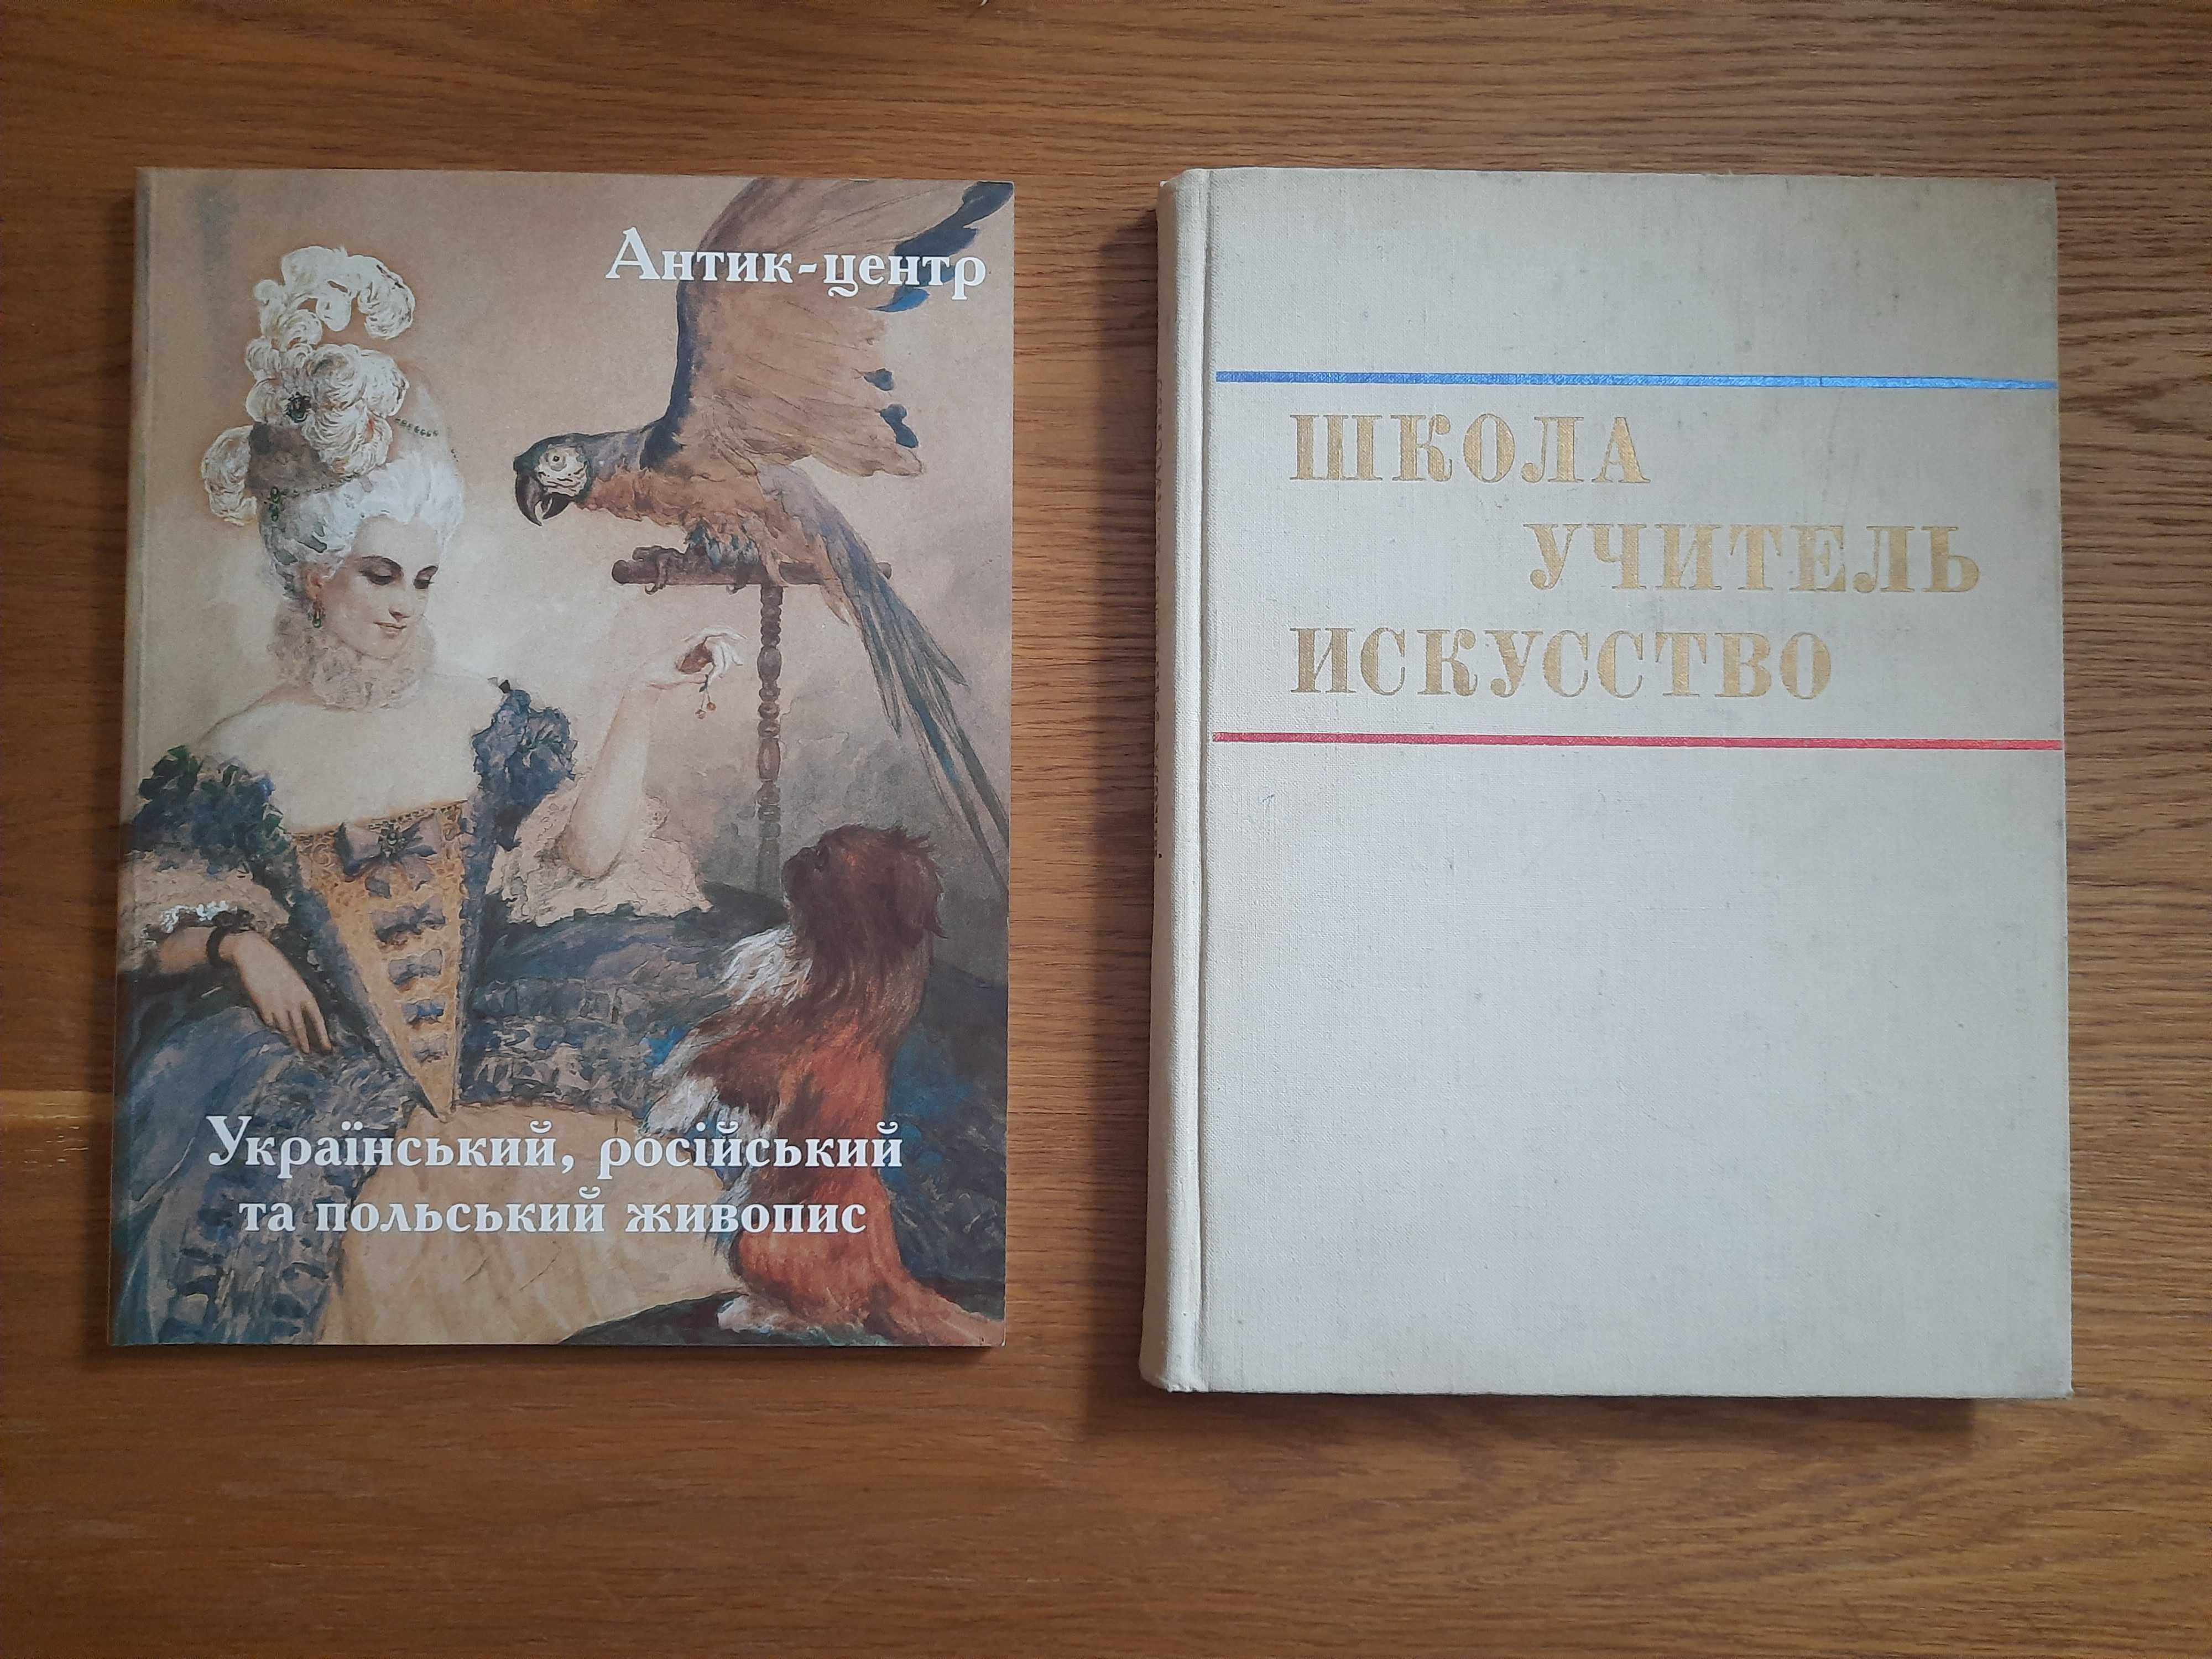 Аукционный каталог "Антик-центр" и Книга "Школа,учитель,искусство".